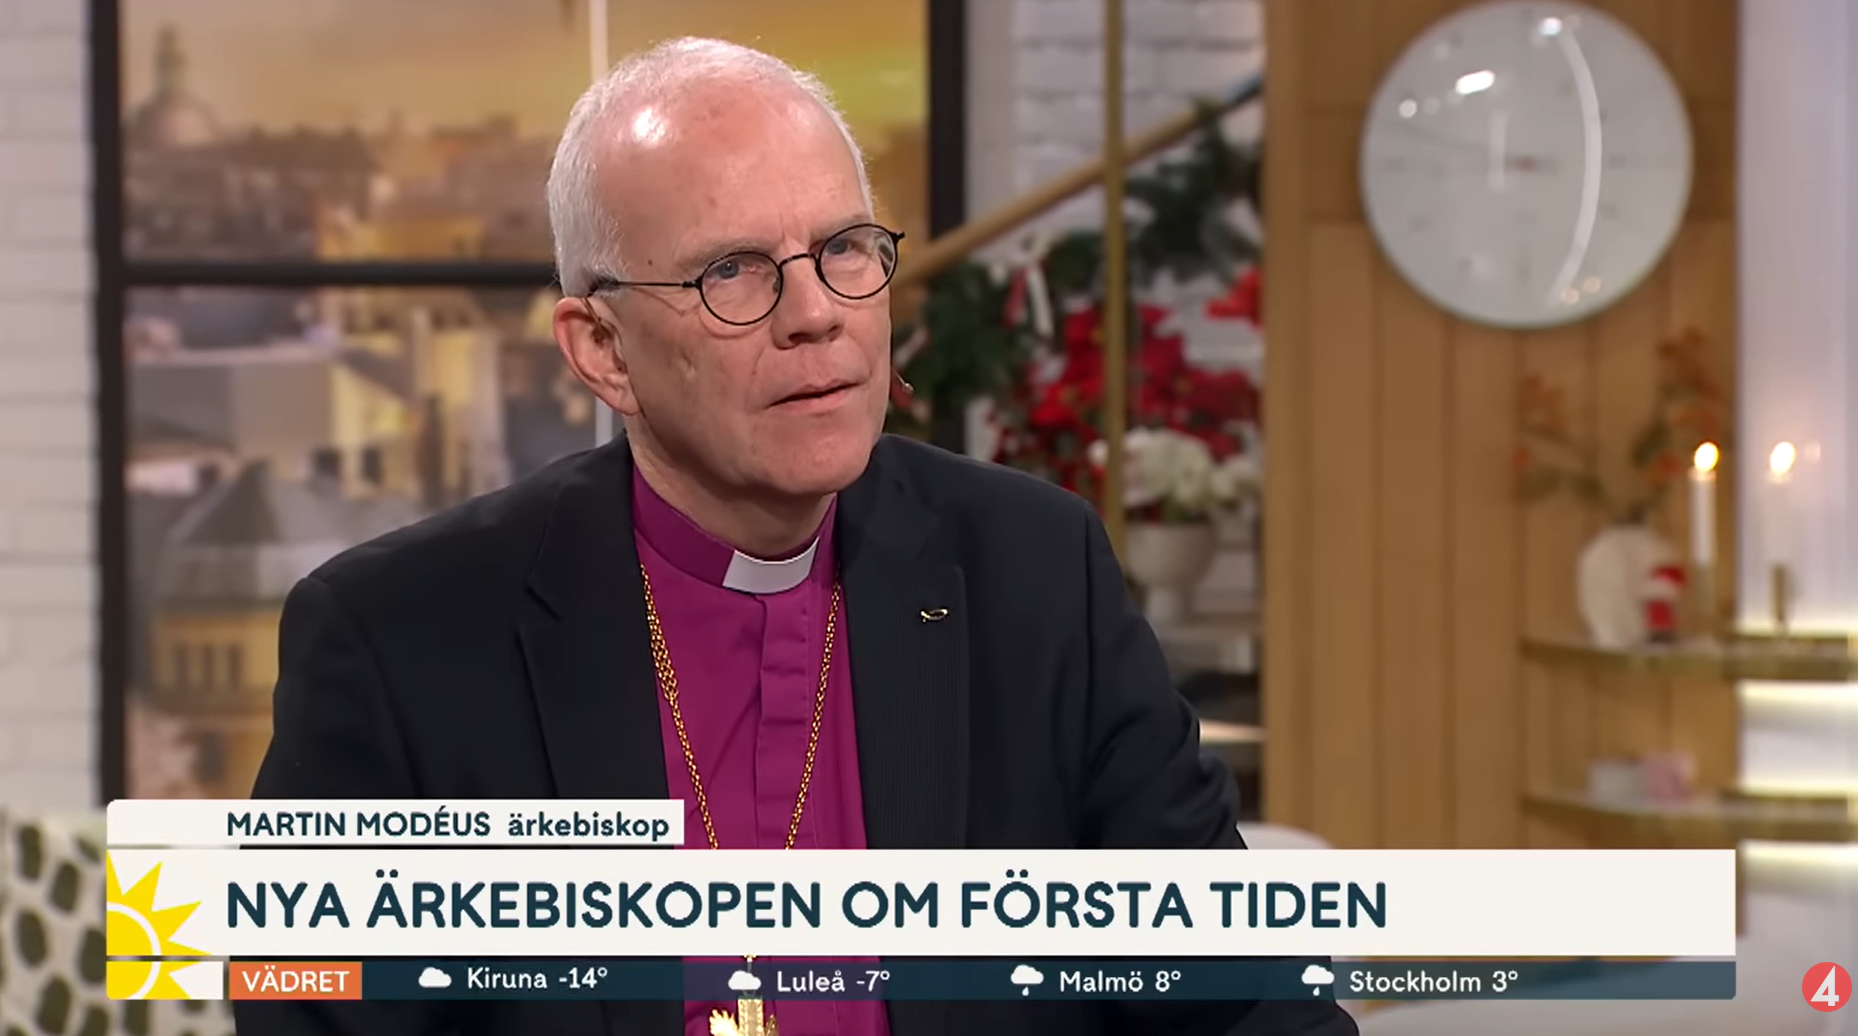 Ärkebiskop Martin Modéus blir intervjuad i TV4:s Nyhetsmorgon.